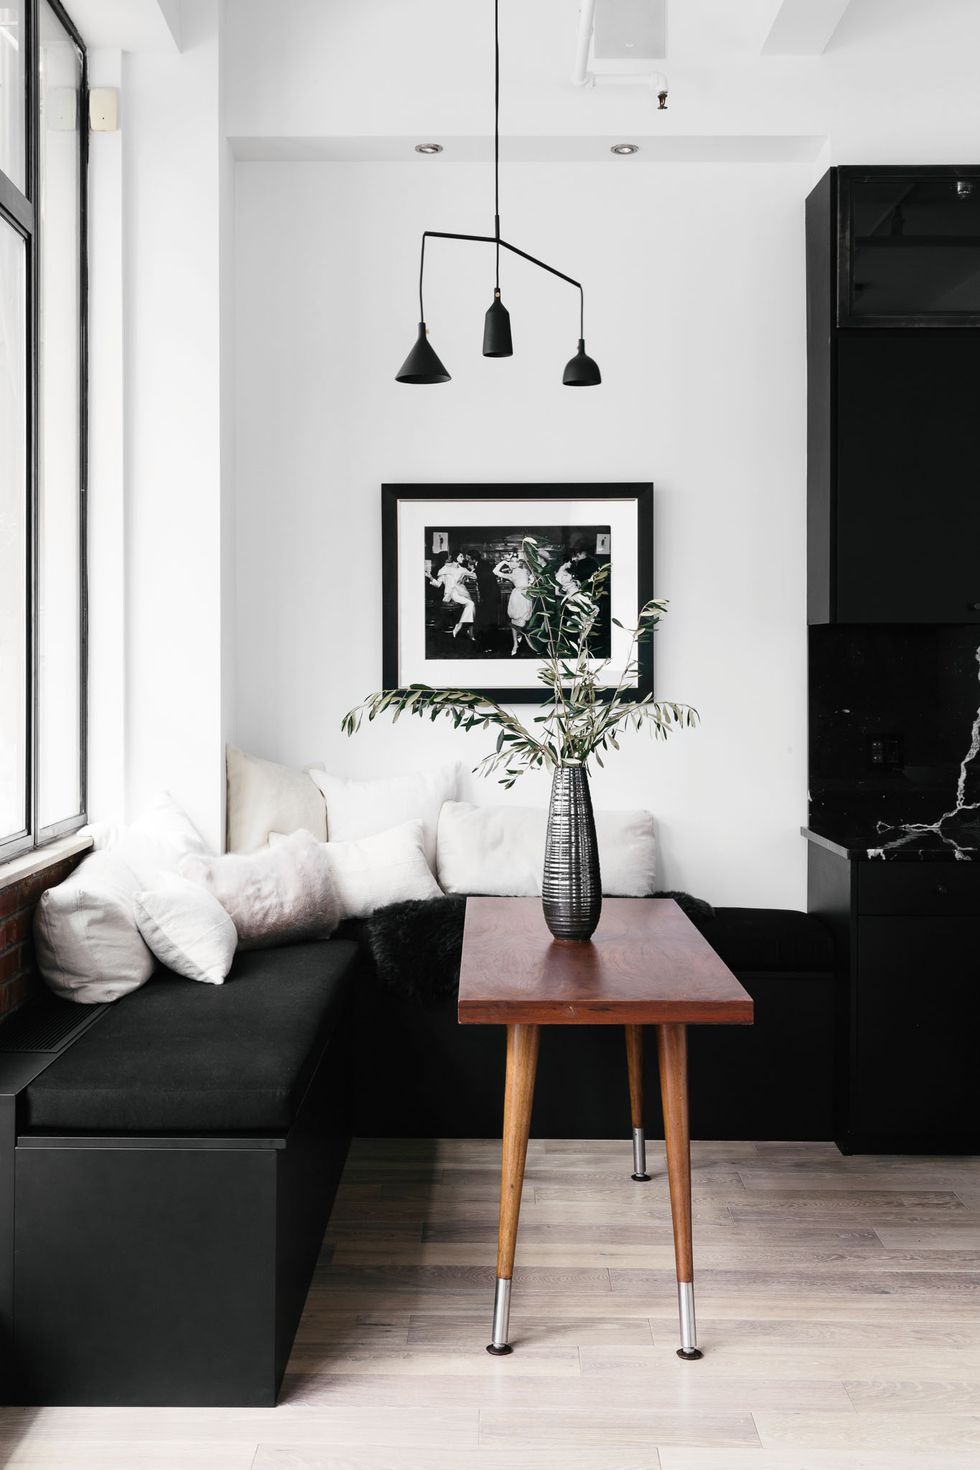 44 striking black & white room ideas - how to use black & white